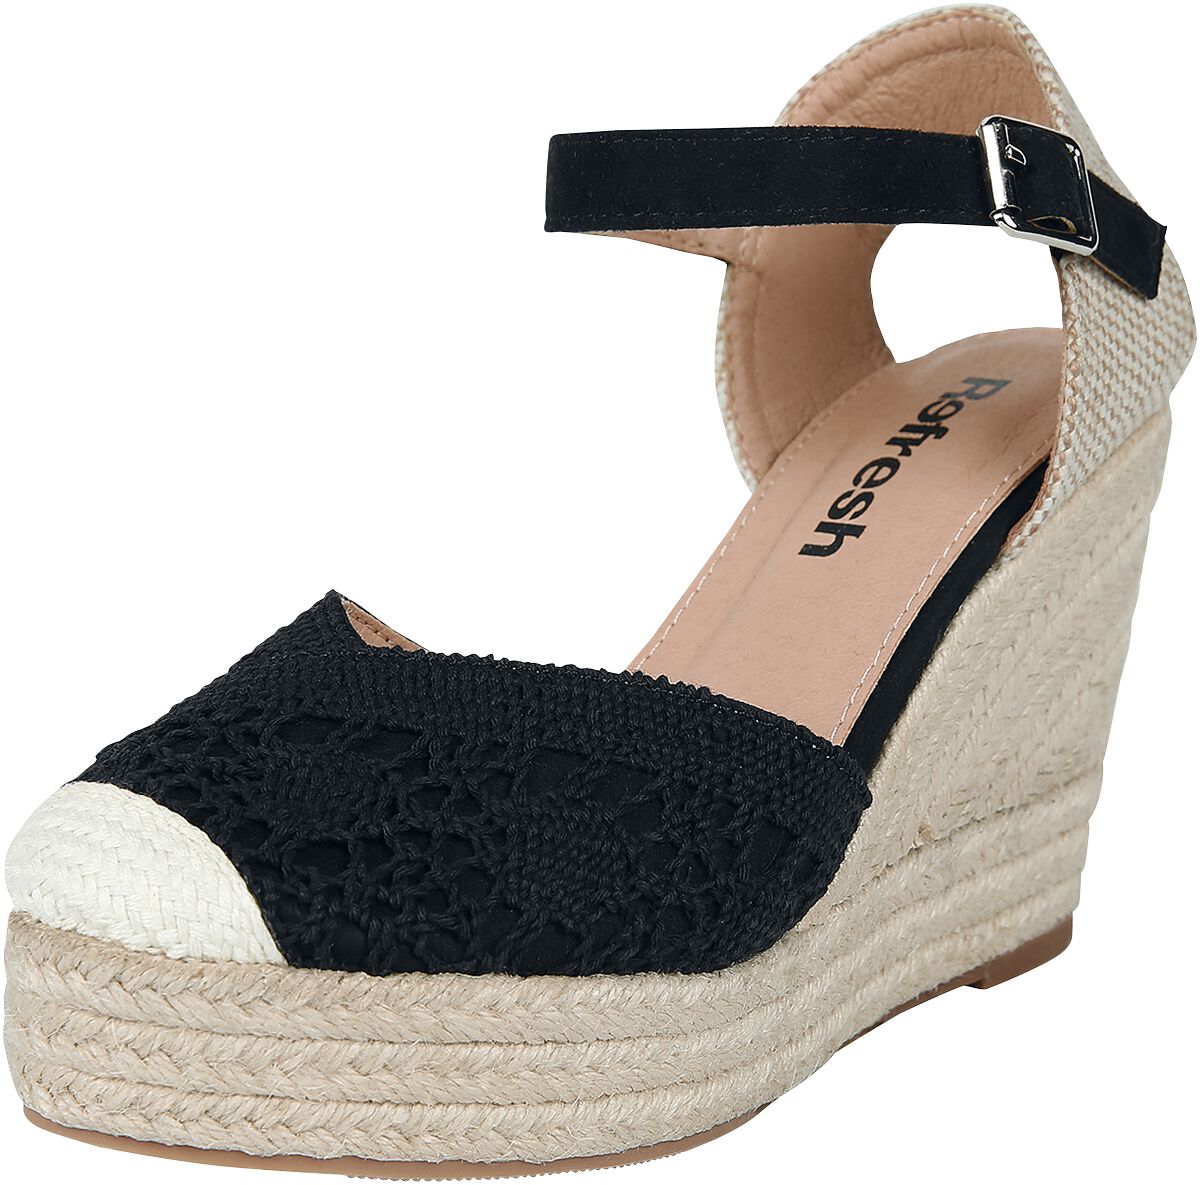 Refresh - Rockabilly High Heel - High Heel Sandale - EU37 bis EU39 - für Damen - Größe EU38 - schwarz